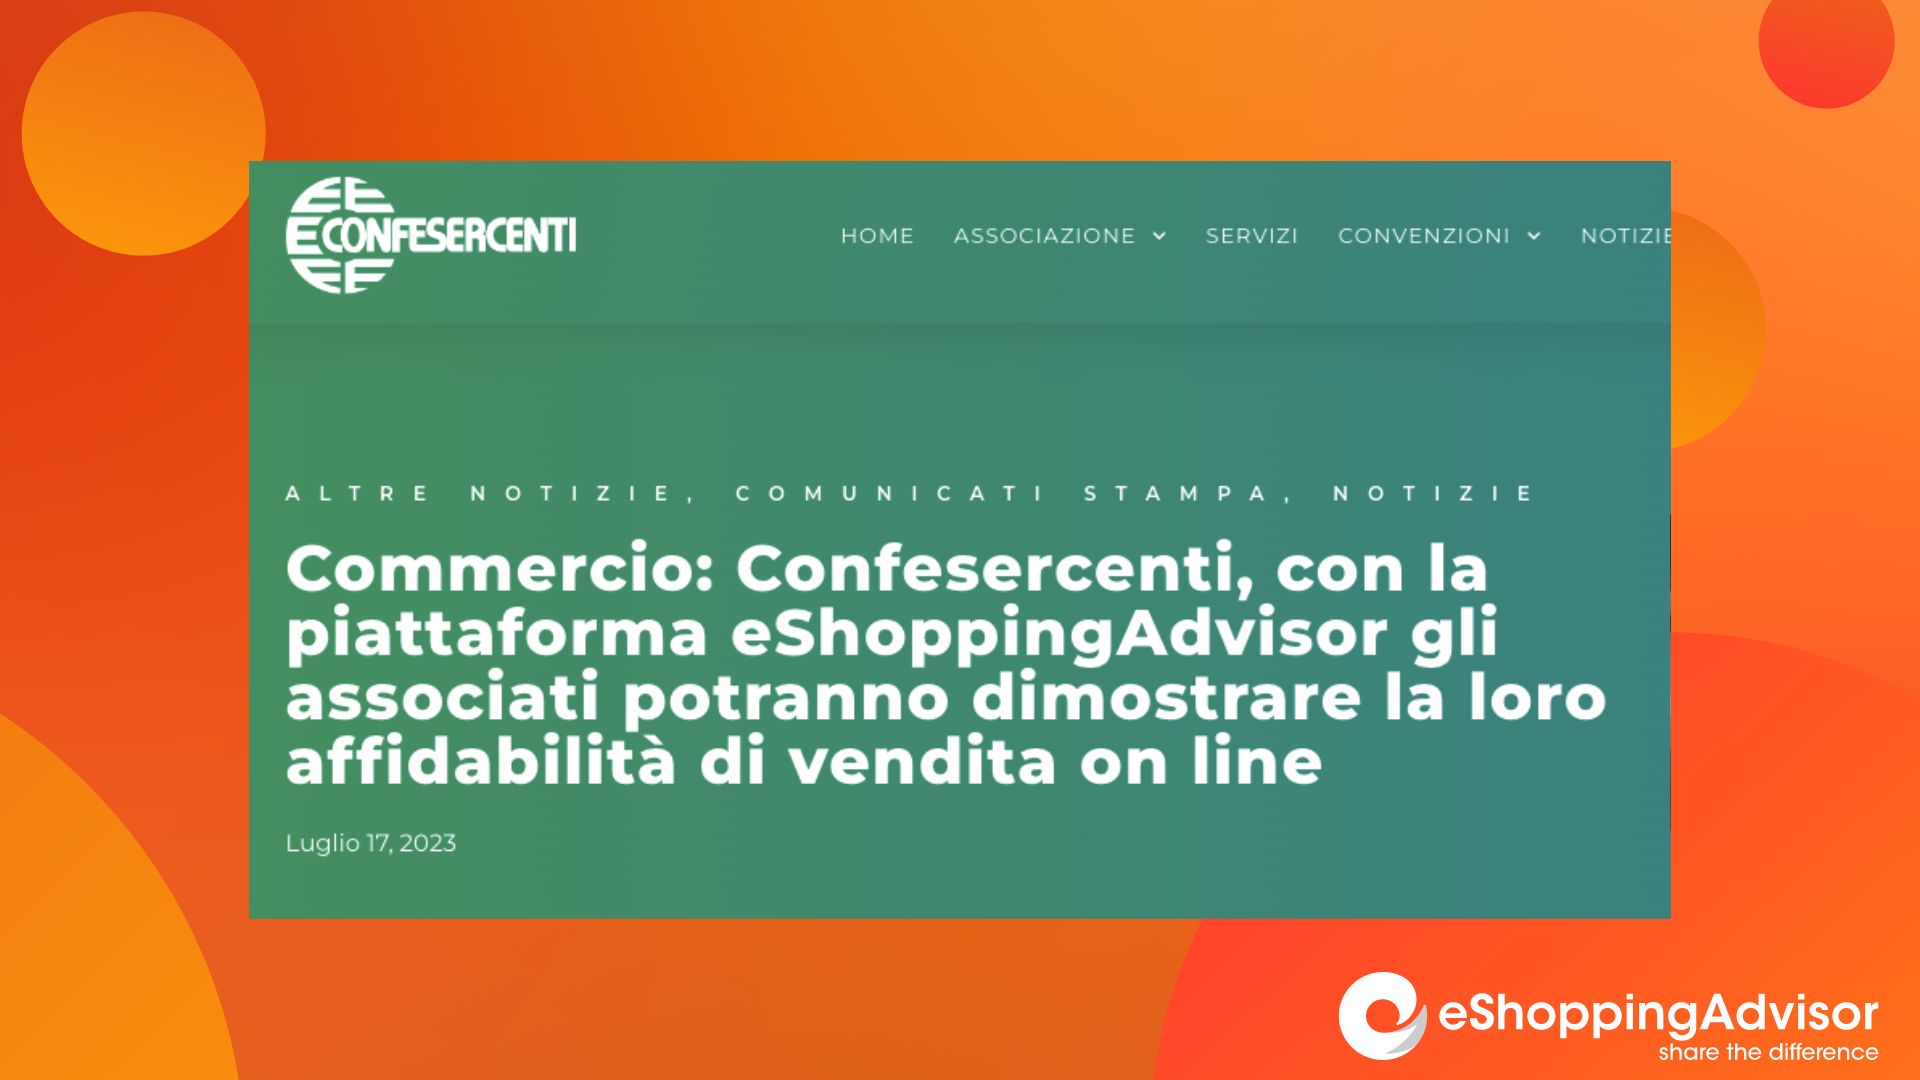 Featured image for “Confesercenti rinnova la convenzione con eShoppingAdvisor”